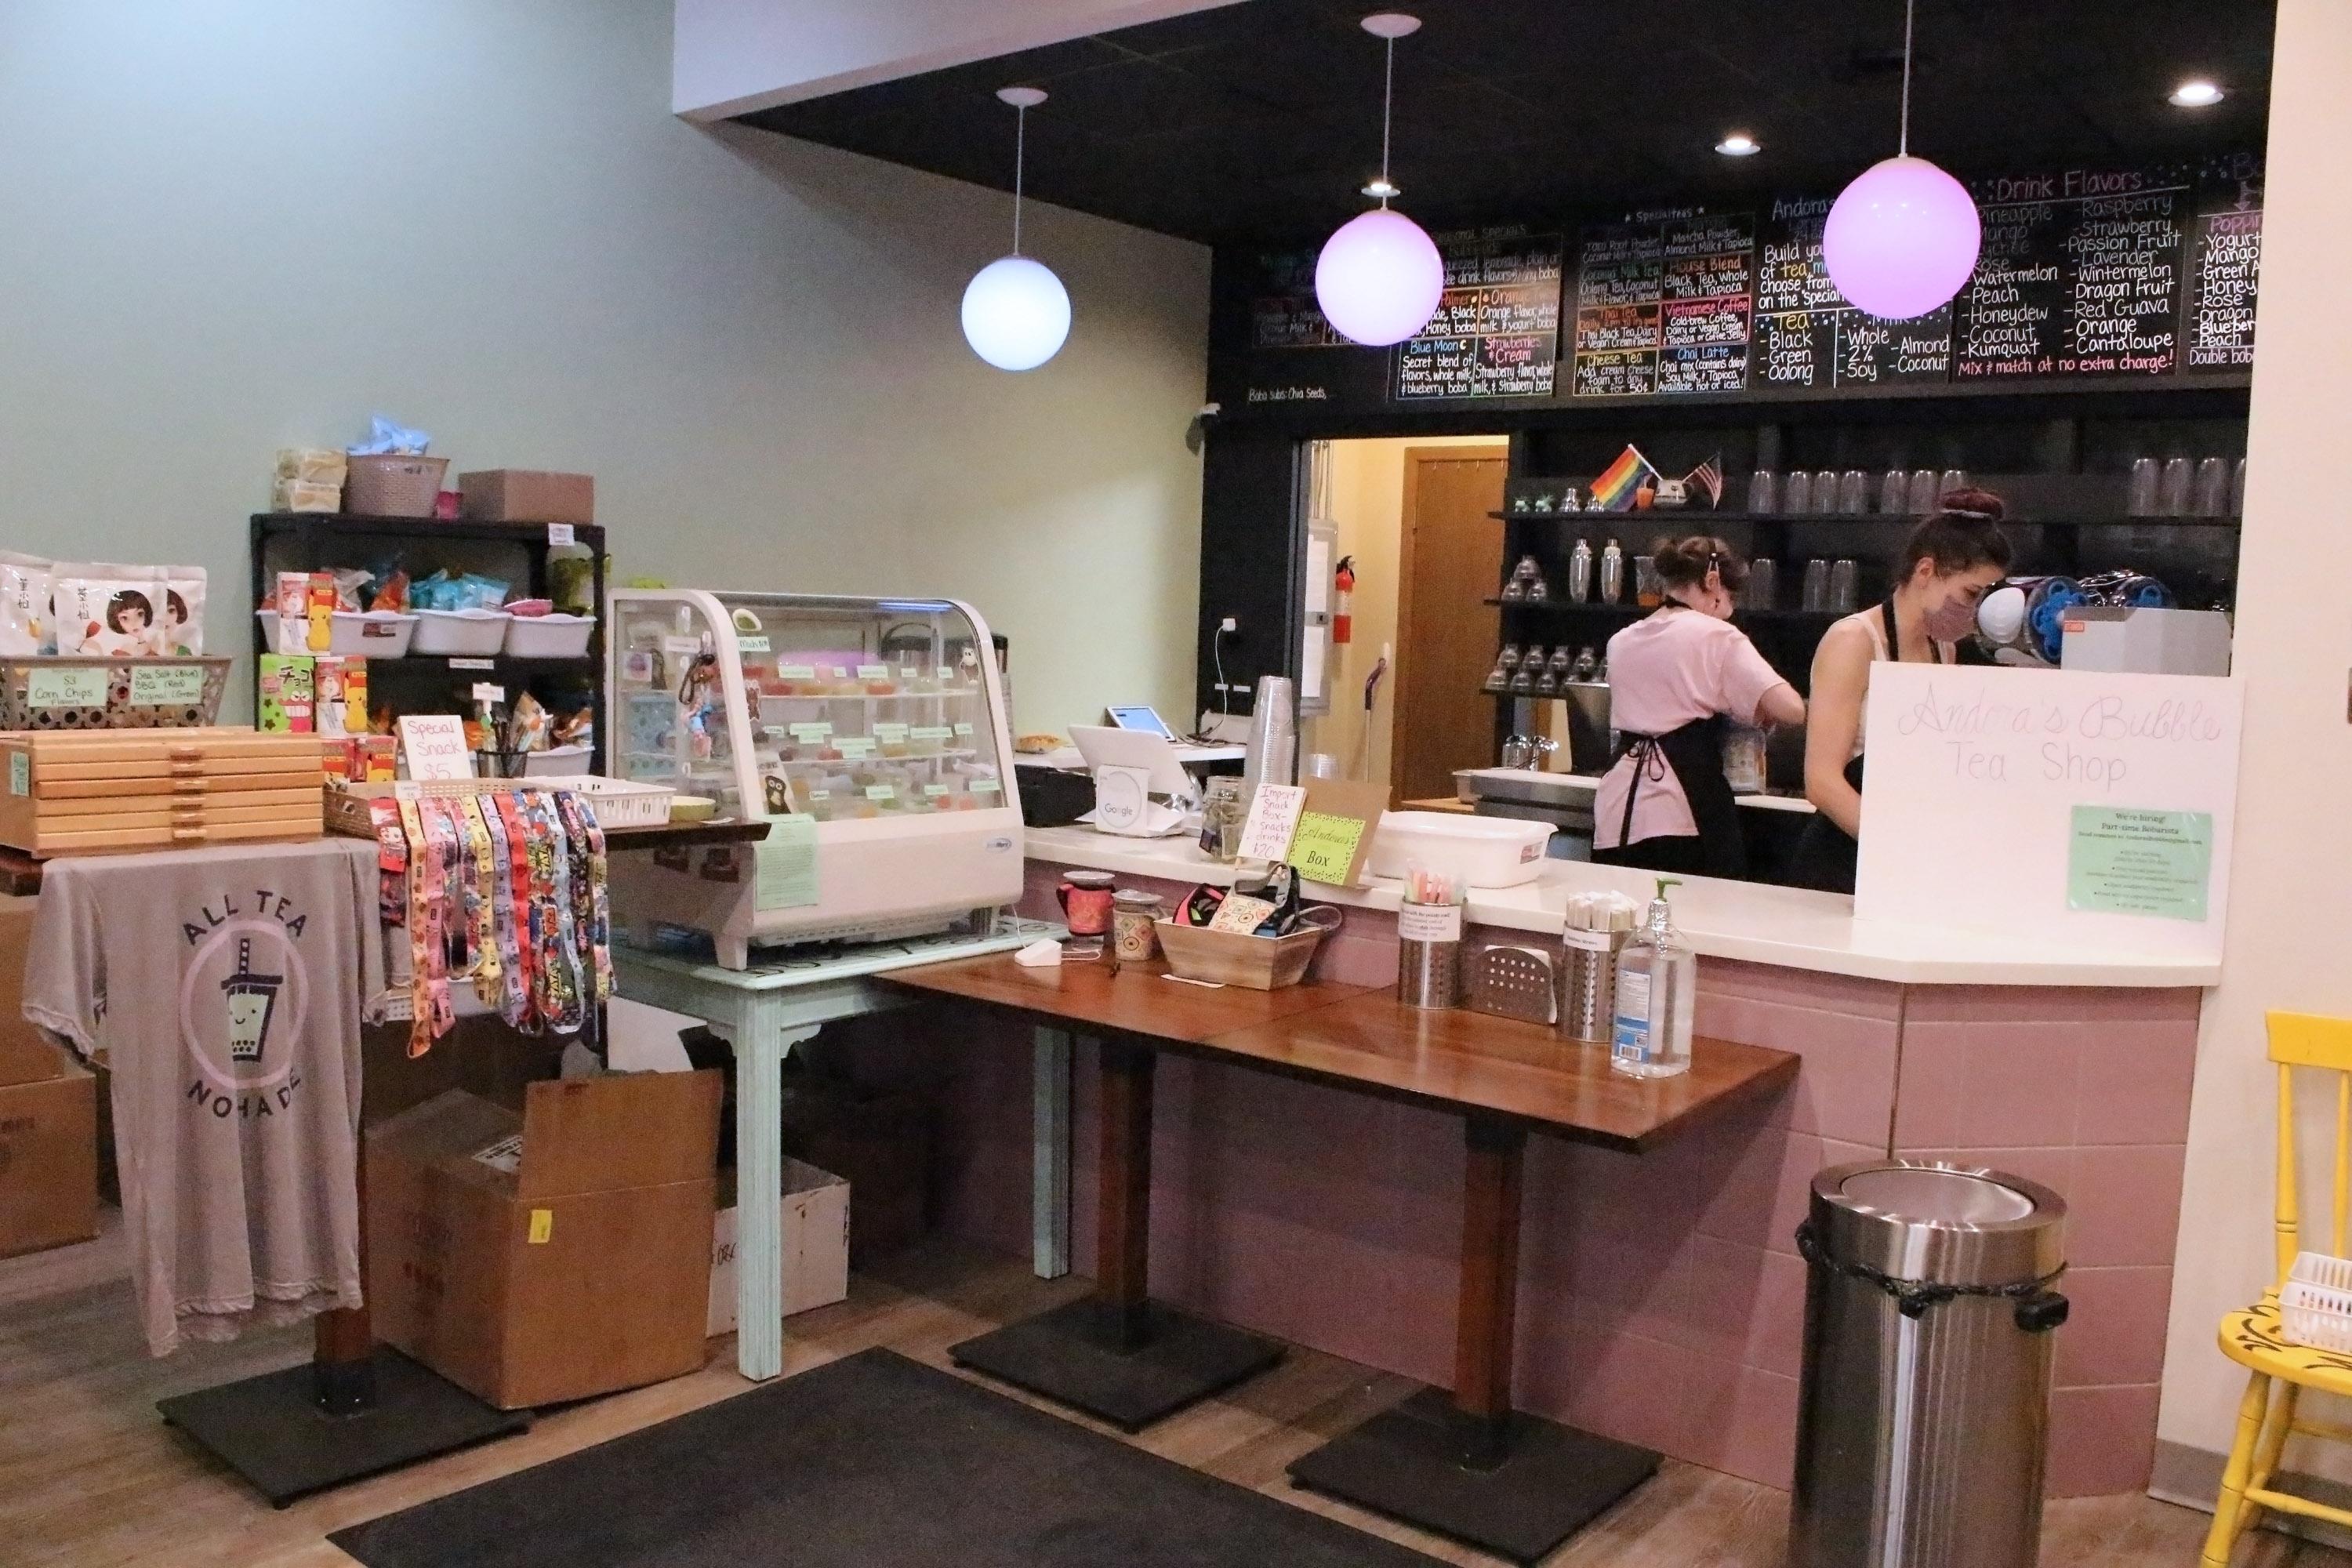 cuello Sedante Caracterizar What's popping at Andora's Bubble Tea Shop? - Erie Reader